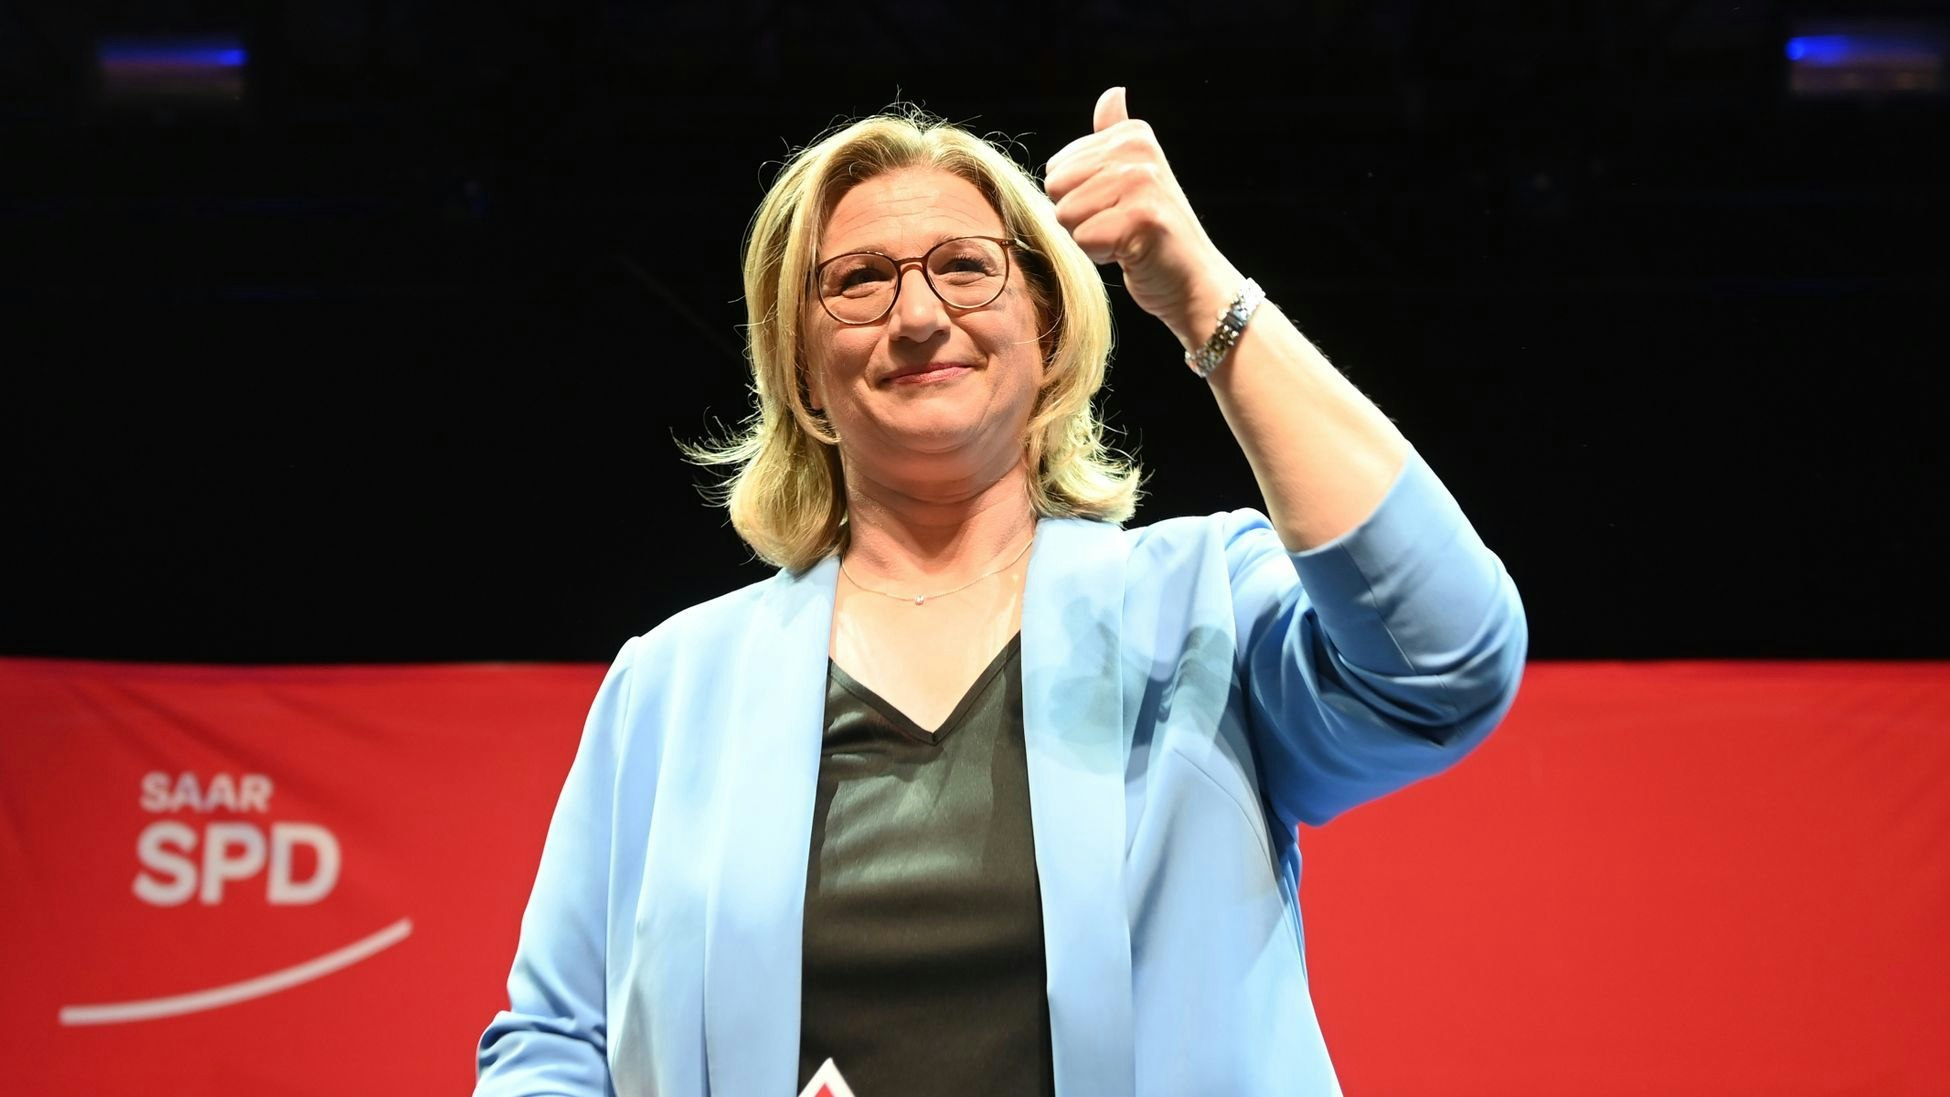 Wahlsiegerin Anke Rehlinger berät heute mit den SPD-Spitzengremien über das weitere Vorgehen. Foto: dpa/Roessler